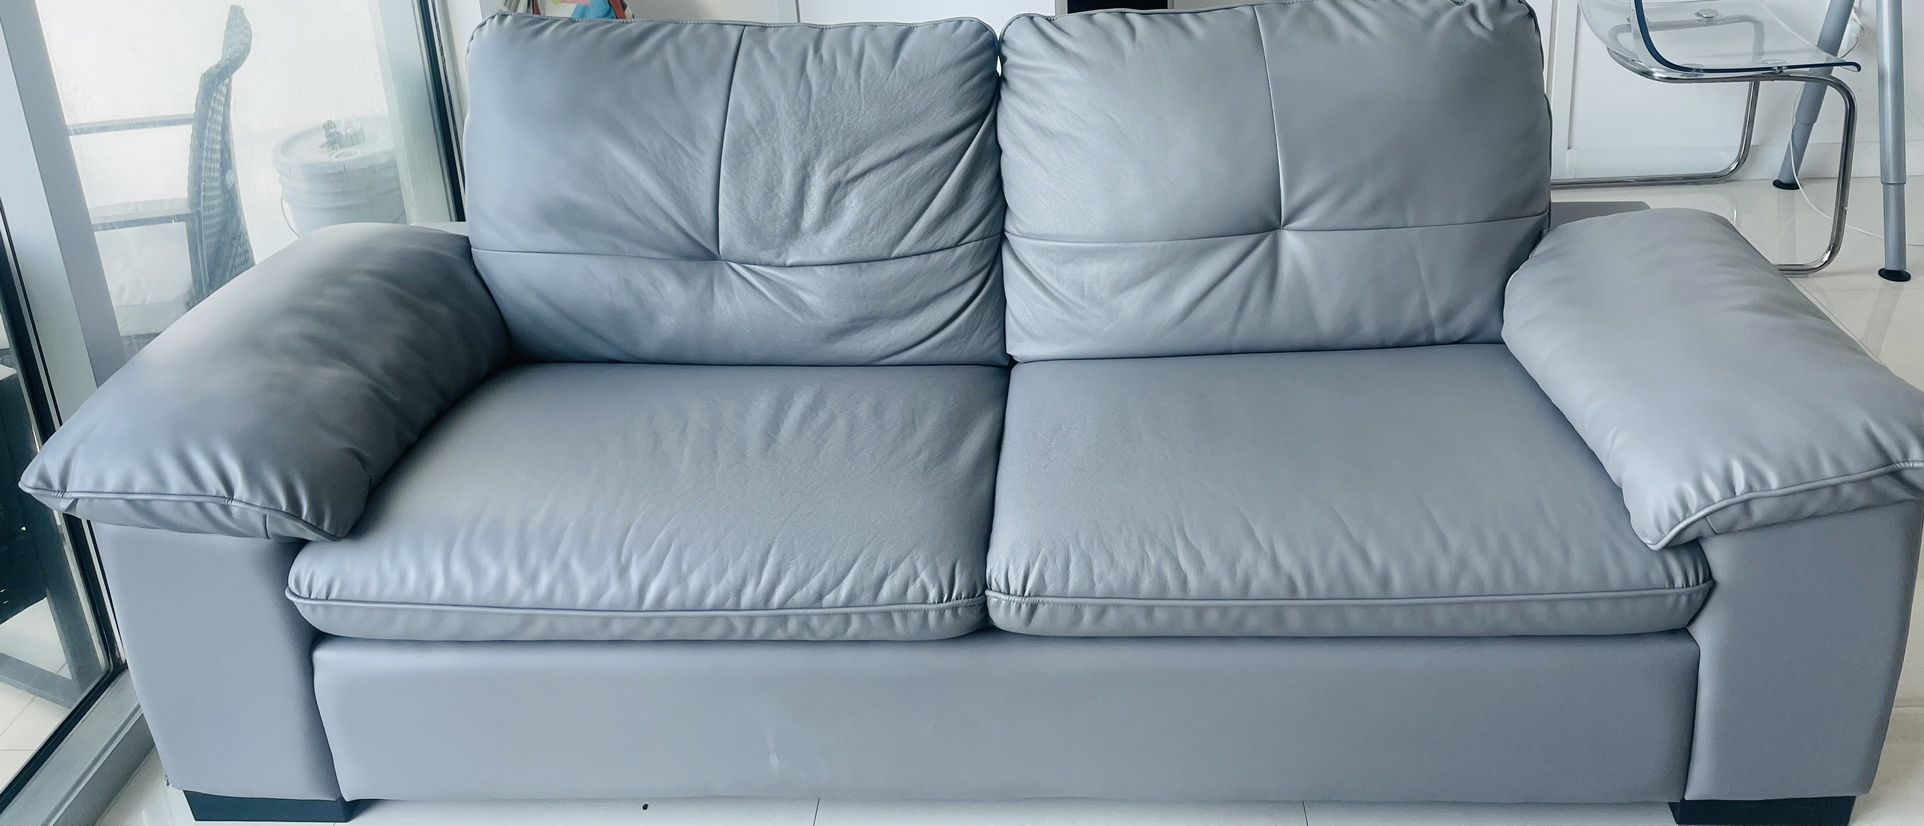   Sofa